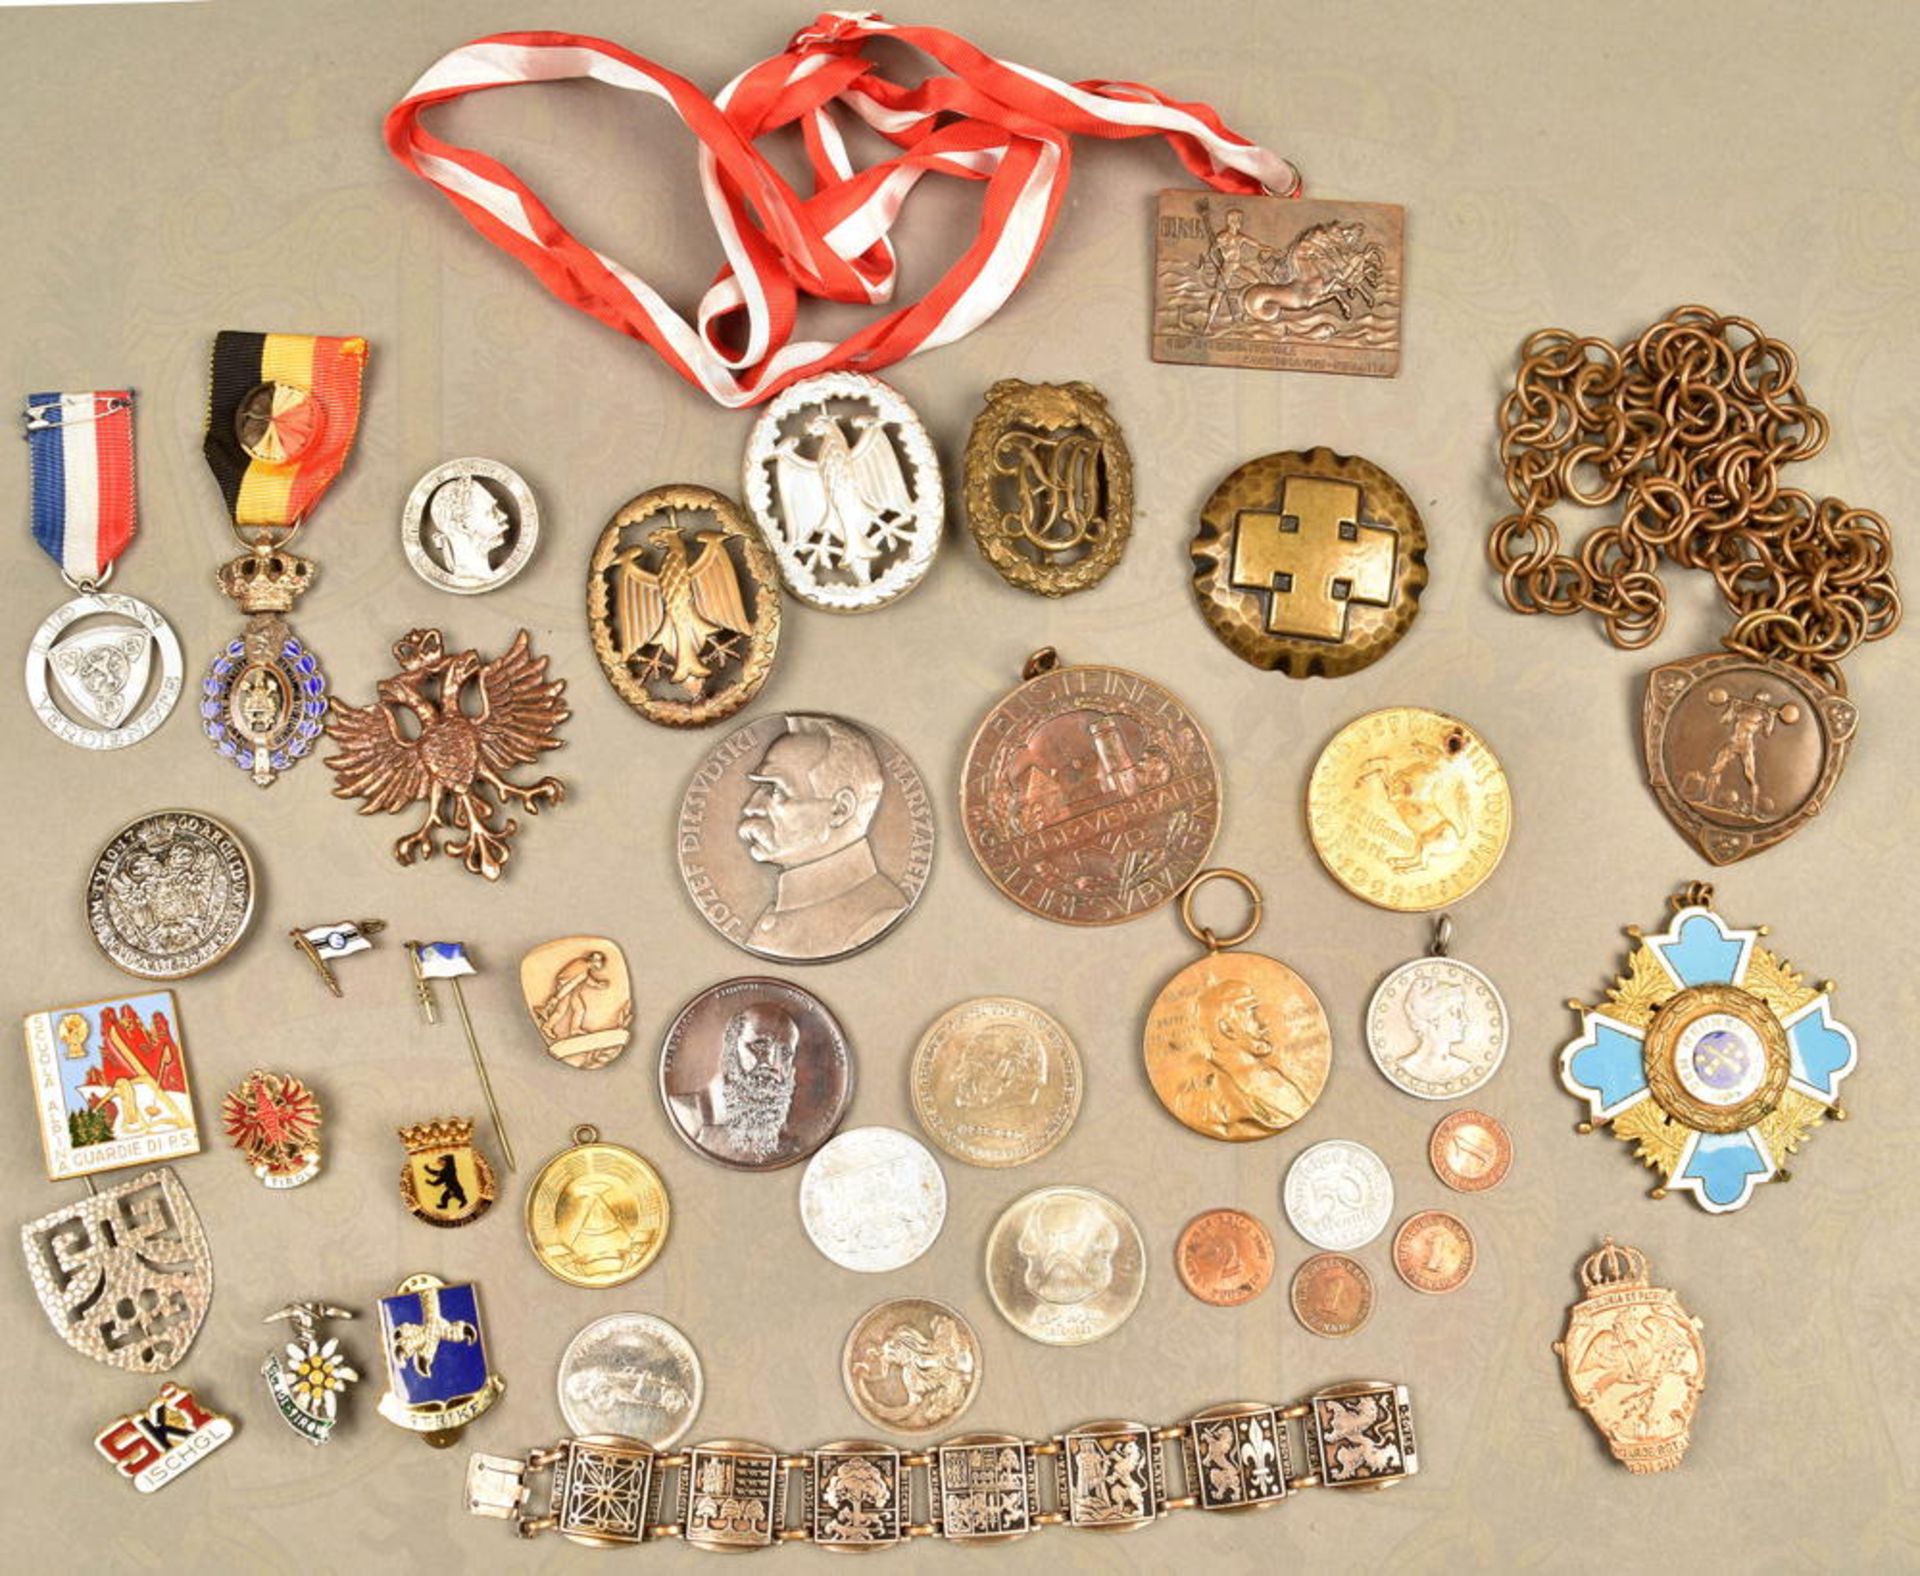 41 MEDAILLEN, ABZEICHEN UND MÜNZEN, Reichssportabzeichen in Bronze, HK entfernt; Centenar-Medaille